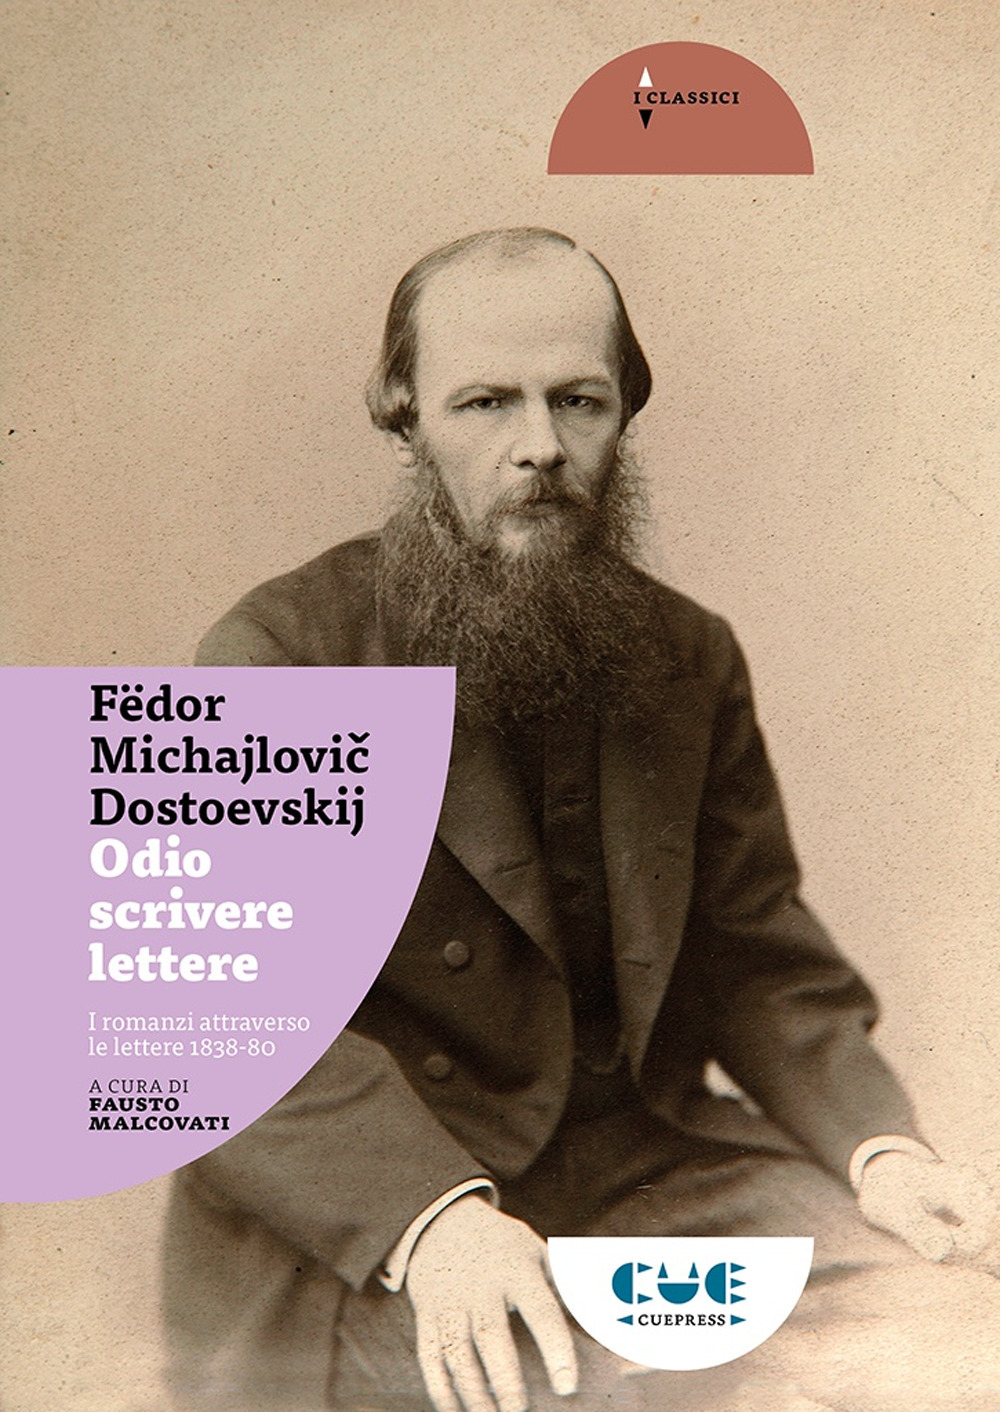 Libri Fëdor Dostoevskij - Odio Scrivere Lettere. I Romanzi Attraverso Le Lettere 1838-80 NUOVO SIGILLATO, EDIZIONE DEL 25/09/2021 SUBITO DISPONIBILE